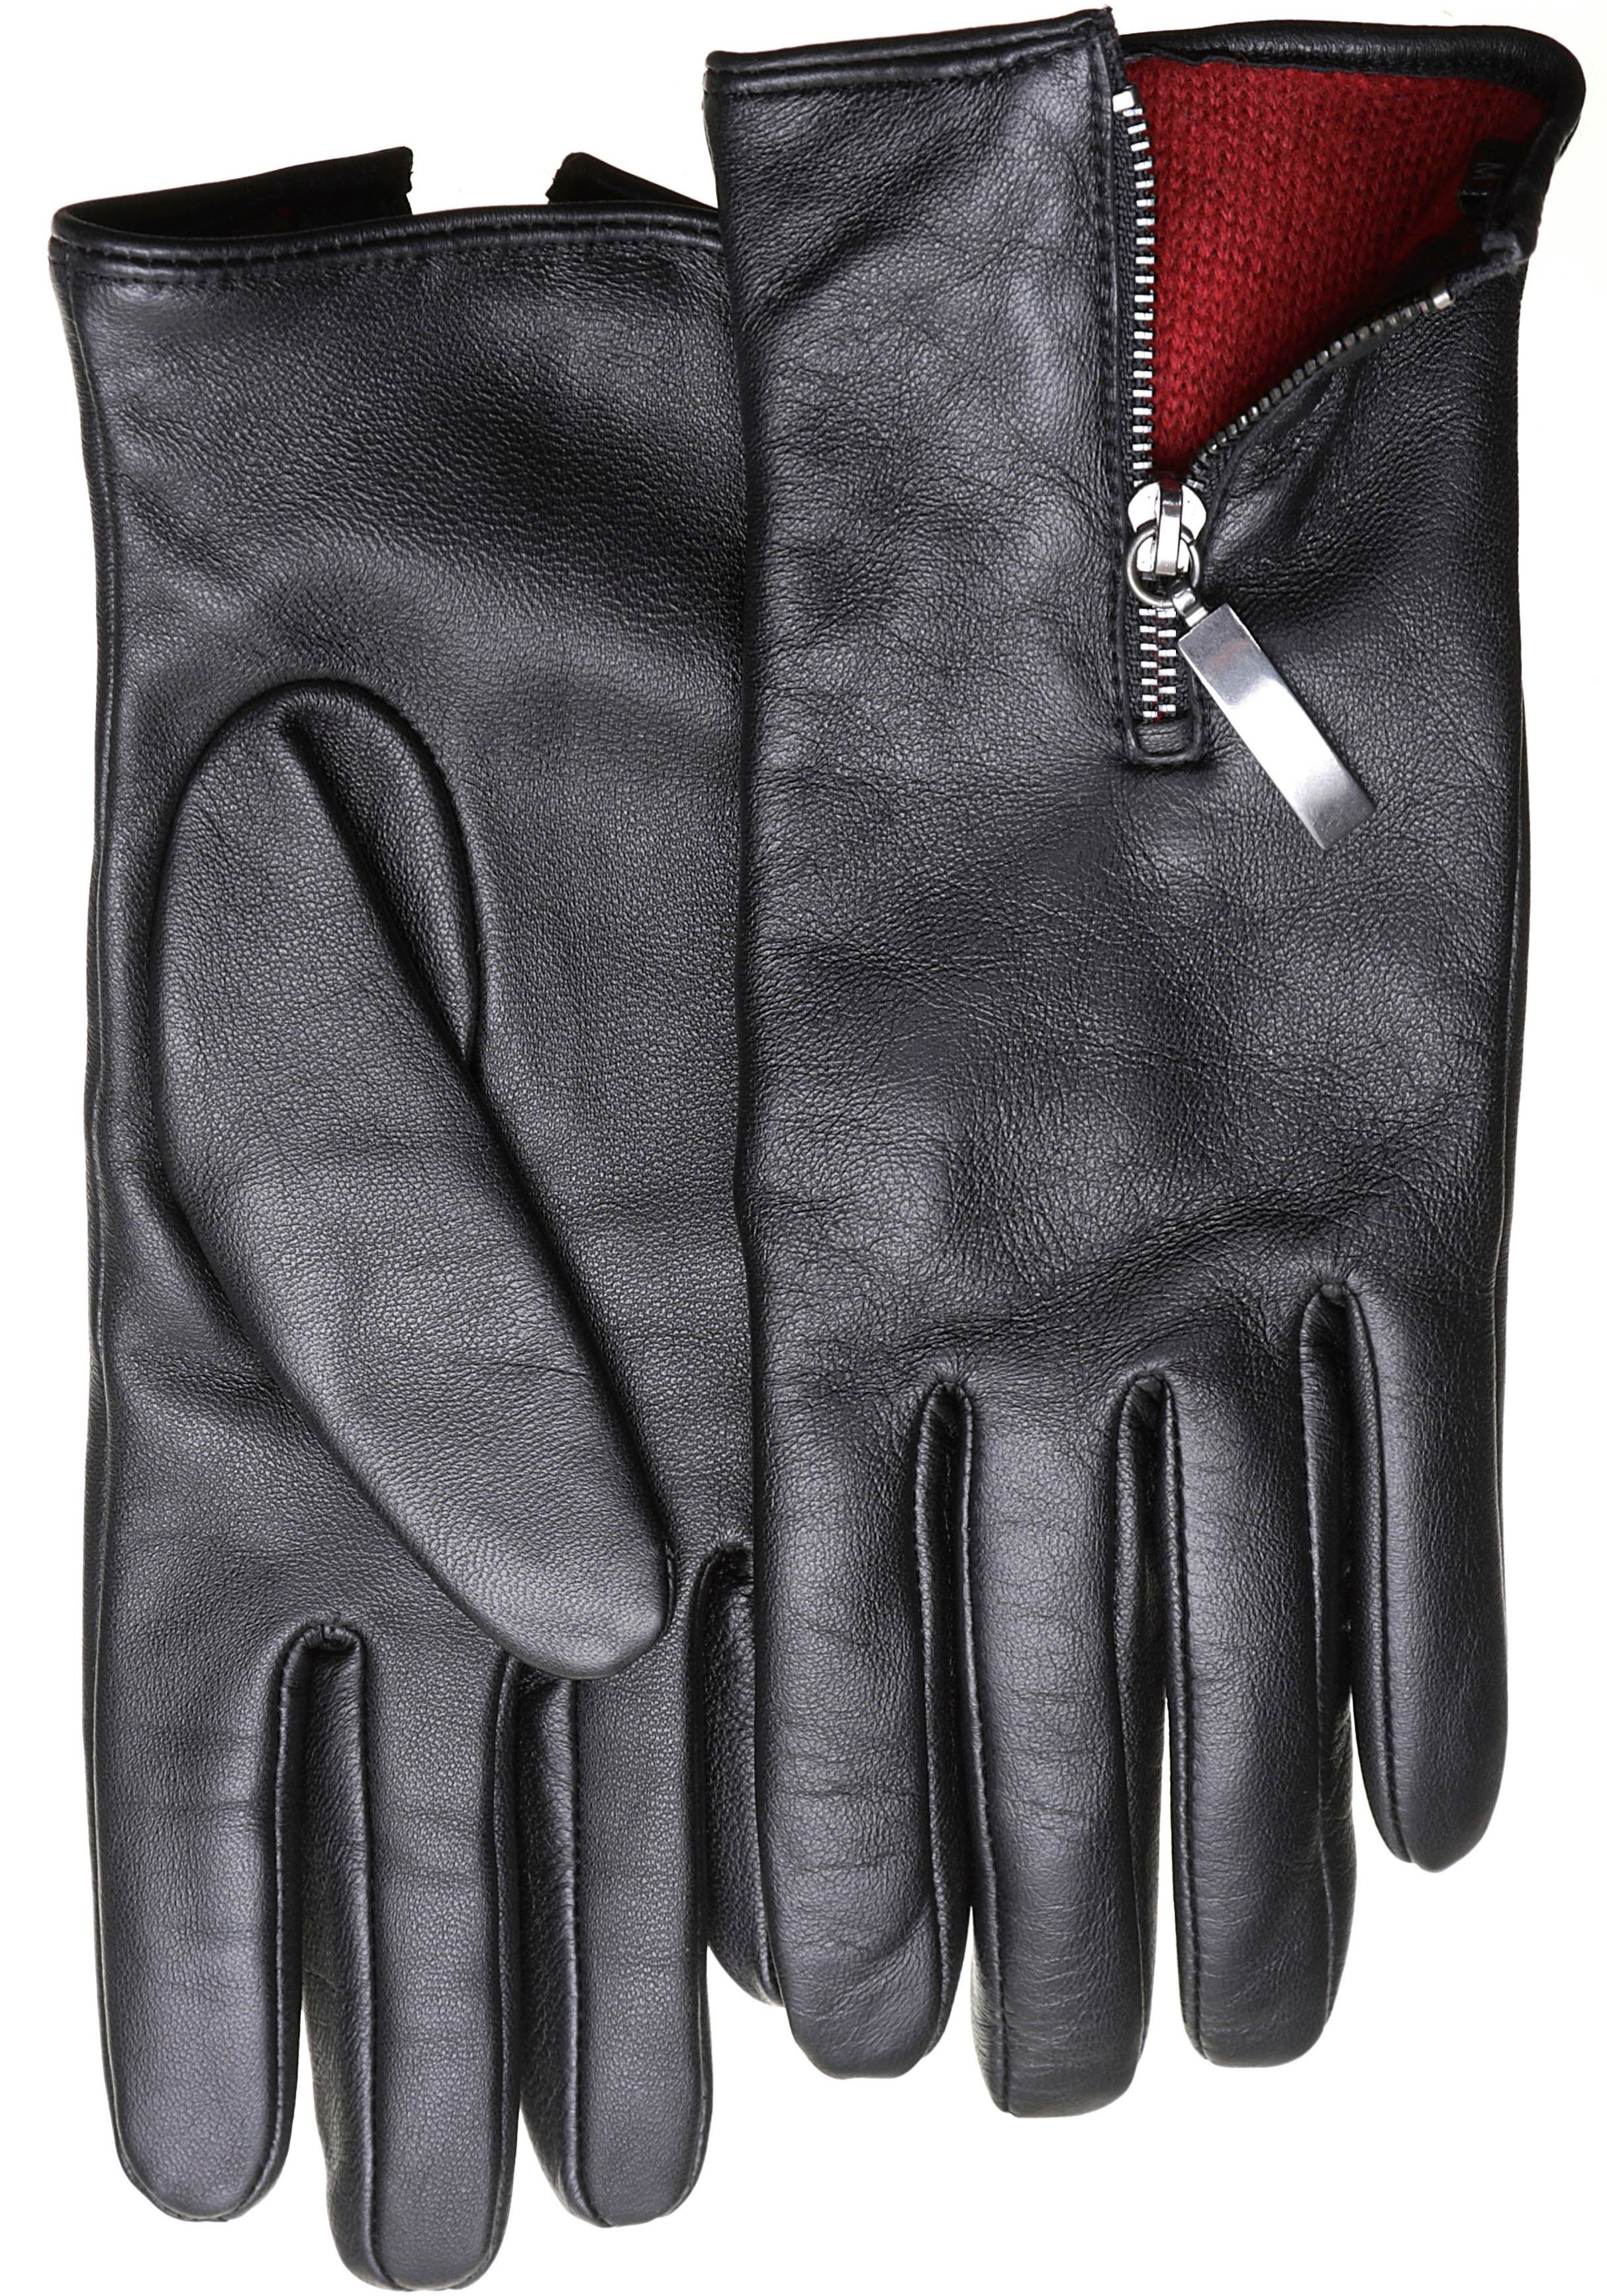 PEARLWOOD Lederhandschuhe mit farbigem Innenfutter, Glattleder, Zipper auf dem Handrücken | Handschuhe